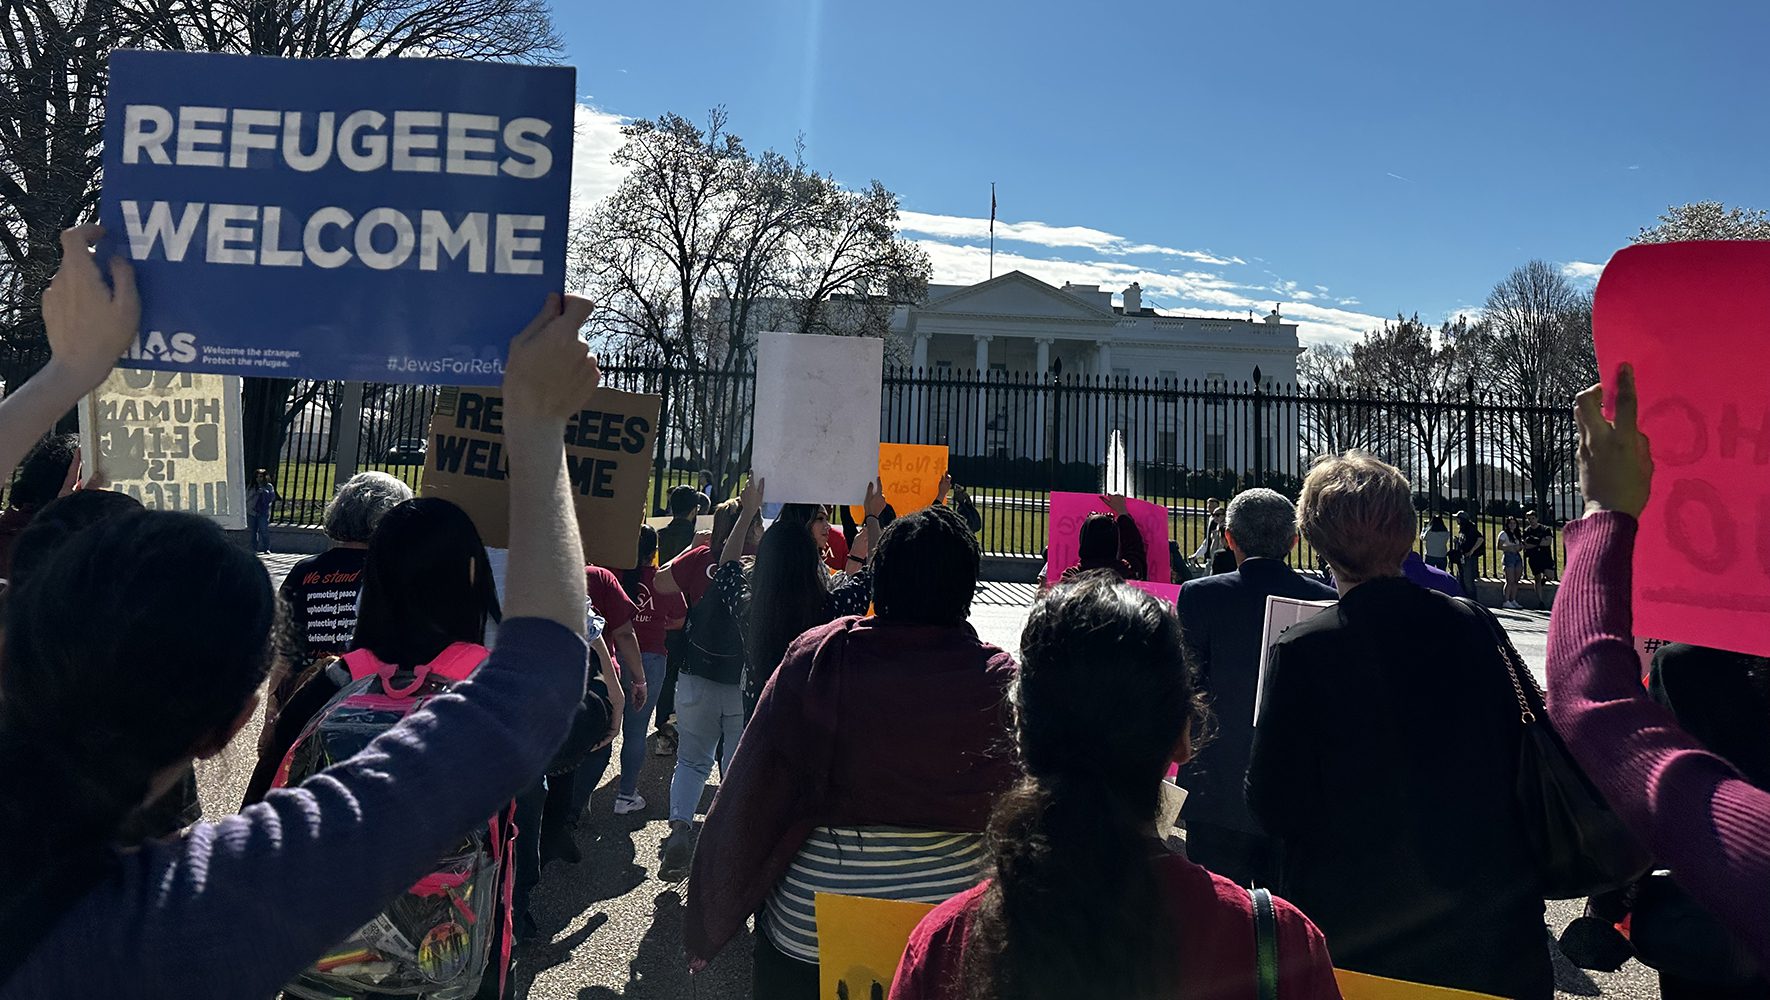 Activistas protestan contra una norma propuesta que limitaría el acceso al asilo en la frontera entre EE.UU. y México en una concentración ante la Casa Blanca. | La "prohibición de asilo" de la Administración Biden, explicada - HIAS